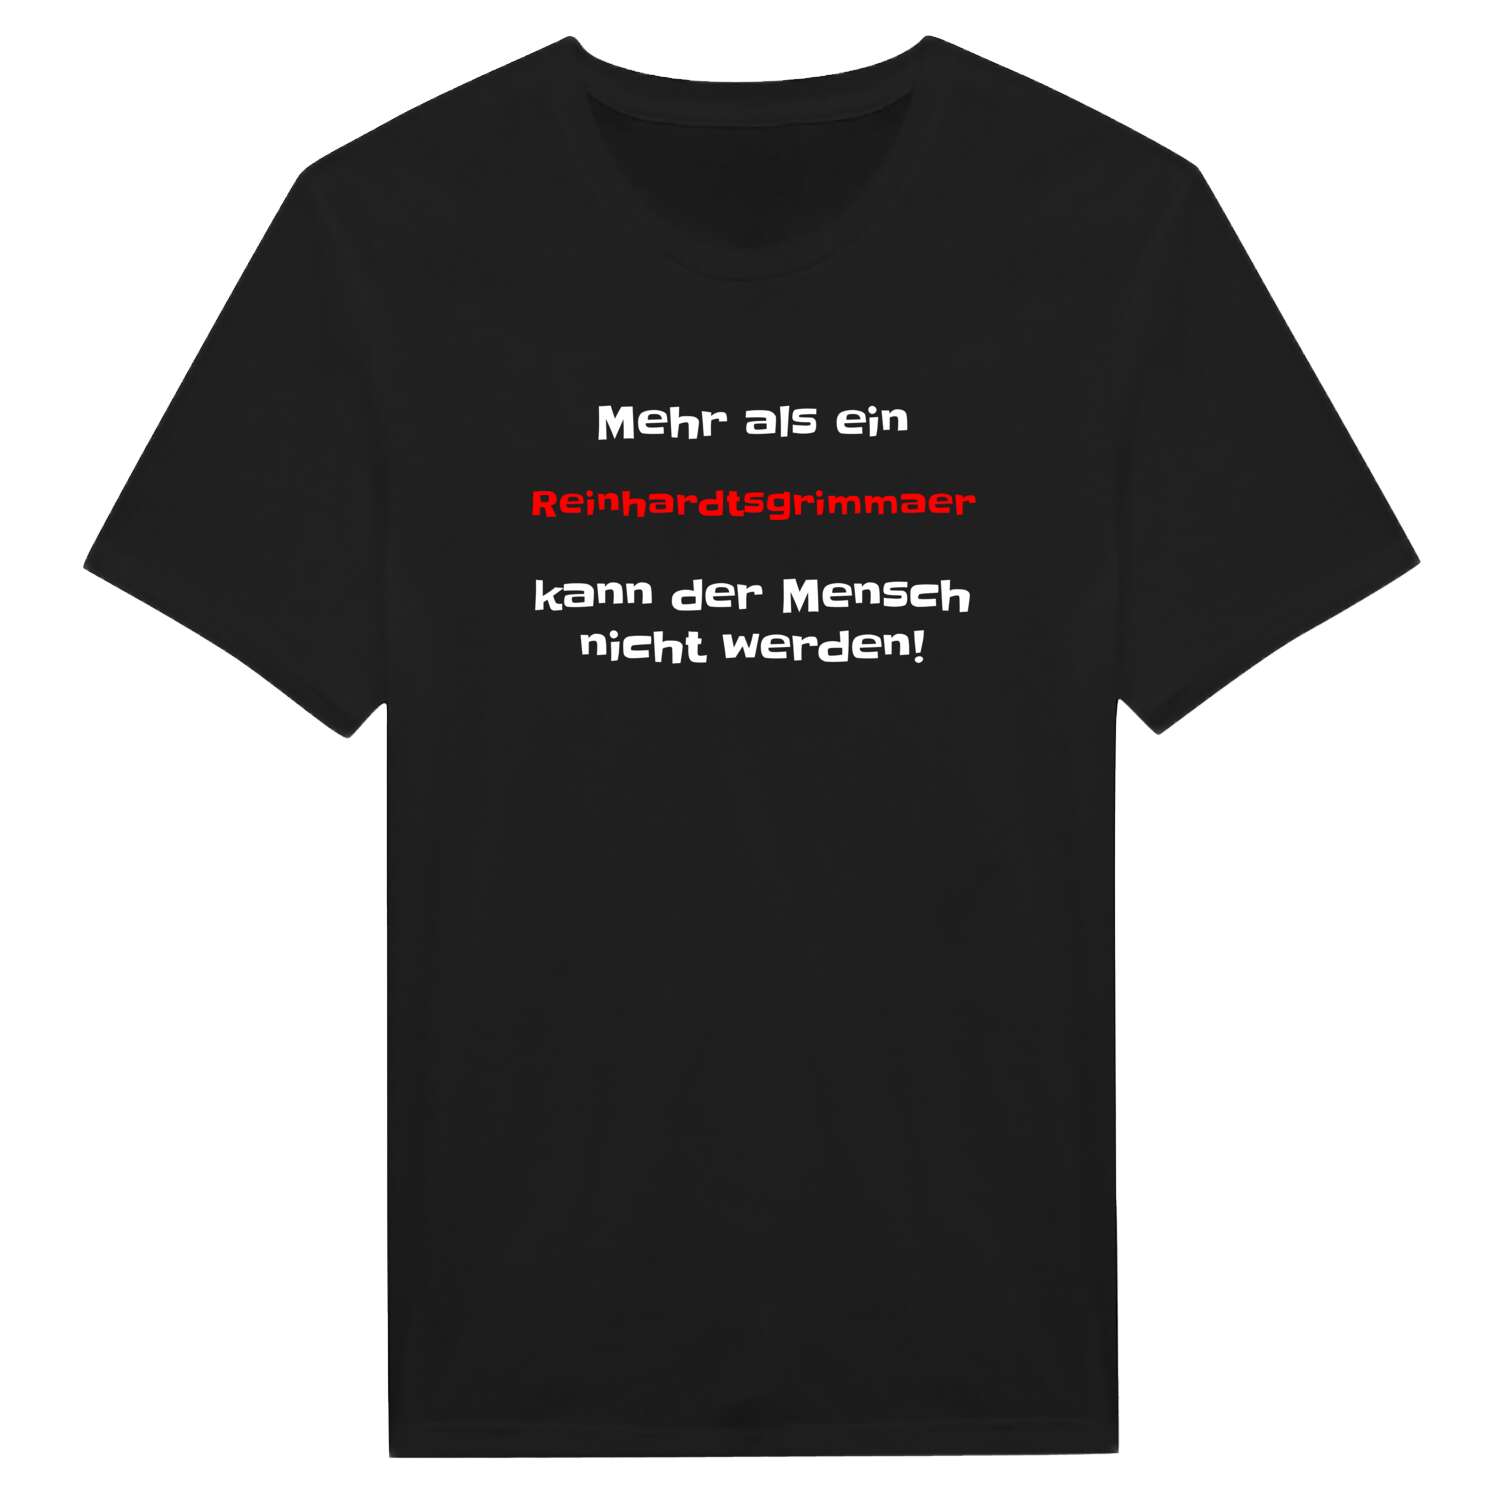 Reinhardtsgrimma T-Shirt »Mehr als ein«